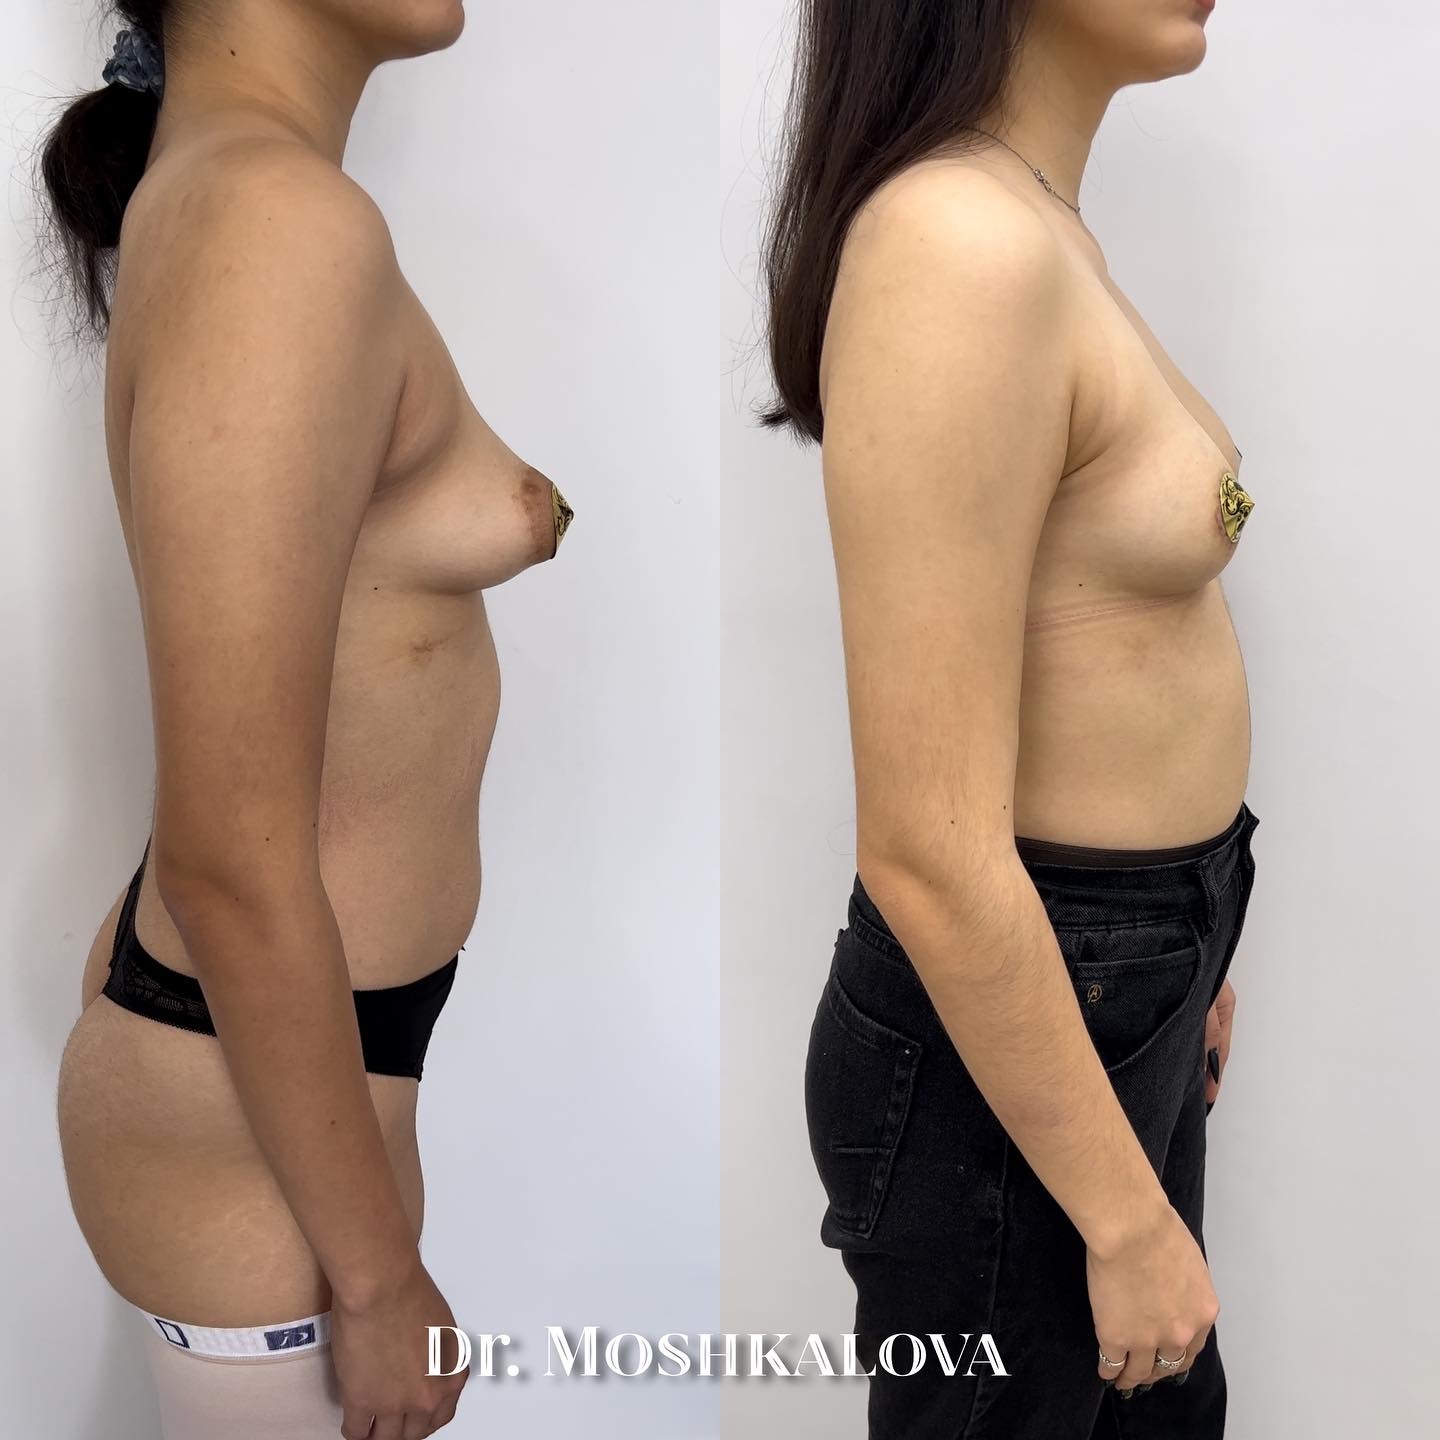 асимметрия груди женщин фото 26